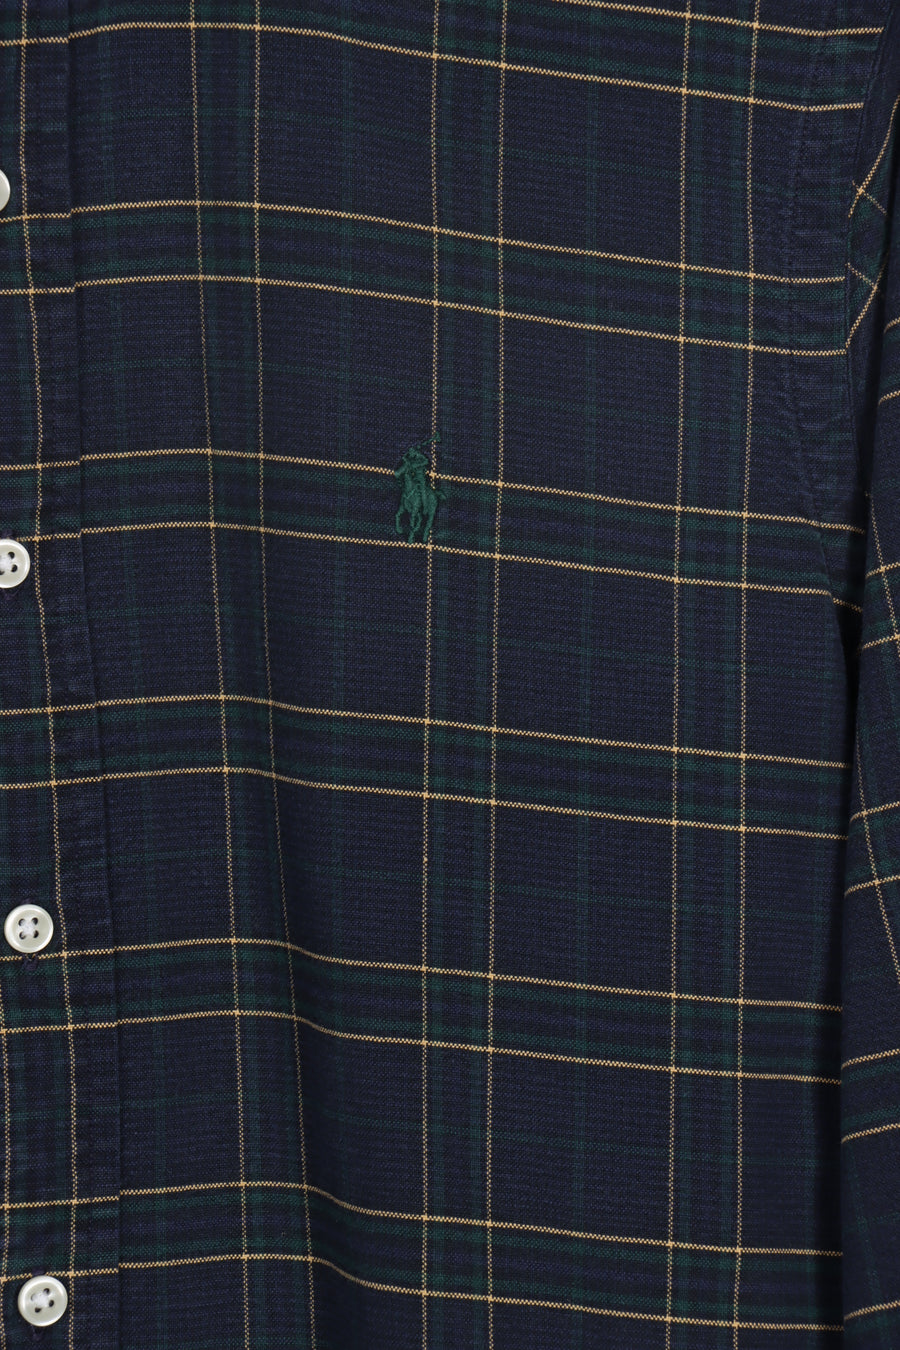 RALPH LAUREN Navy & Green Embroidered Tartan Long Sleeve Button Up Shirt (M)